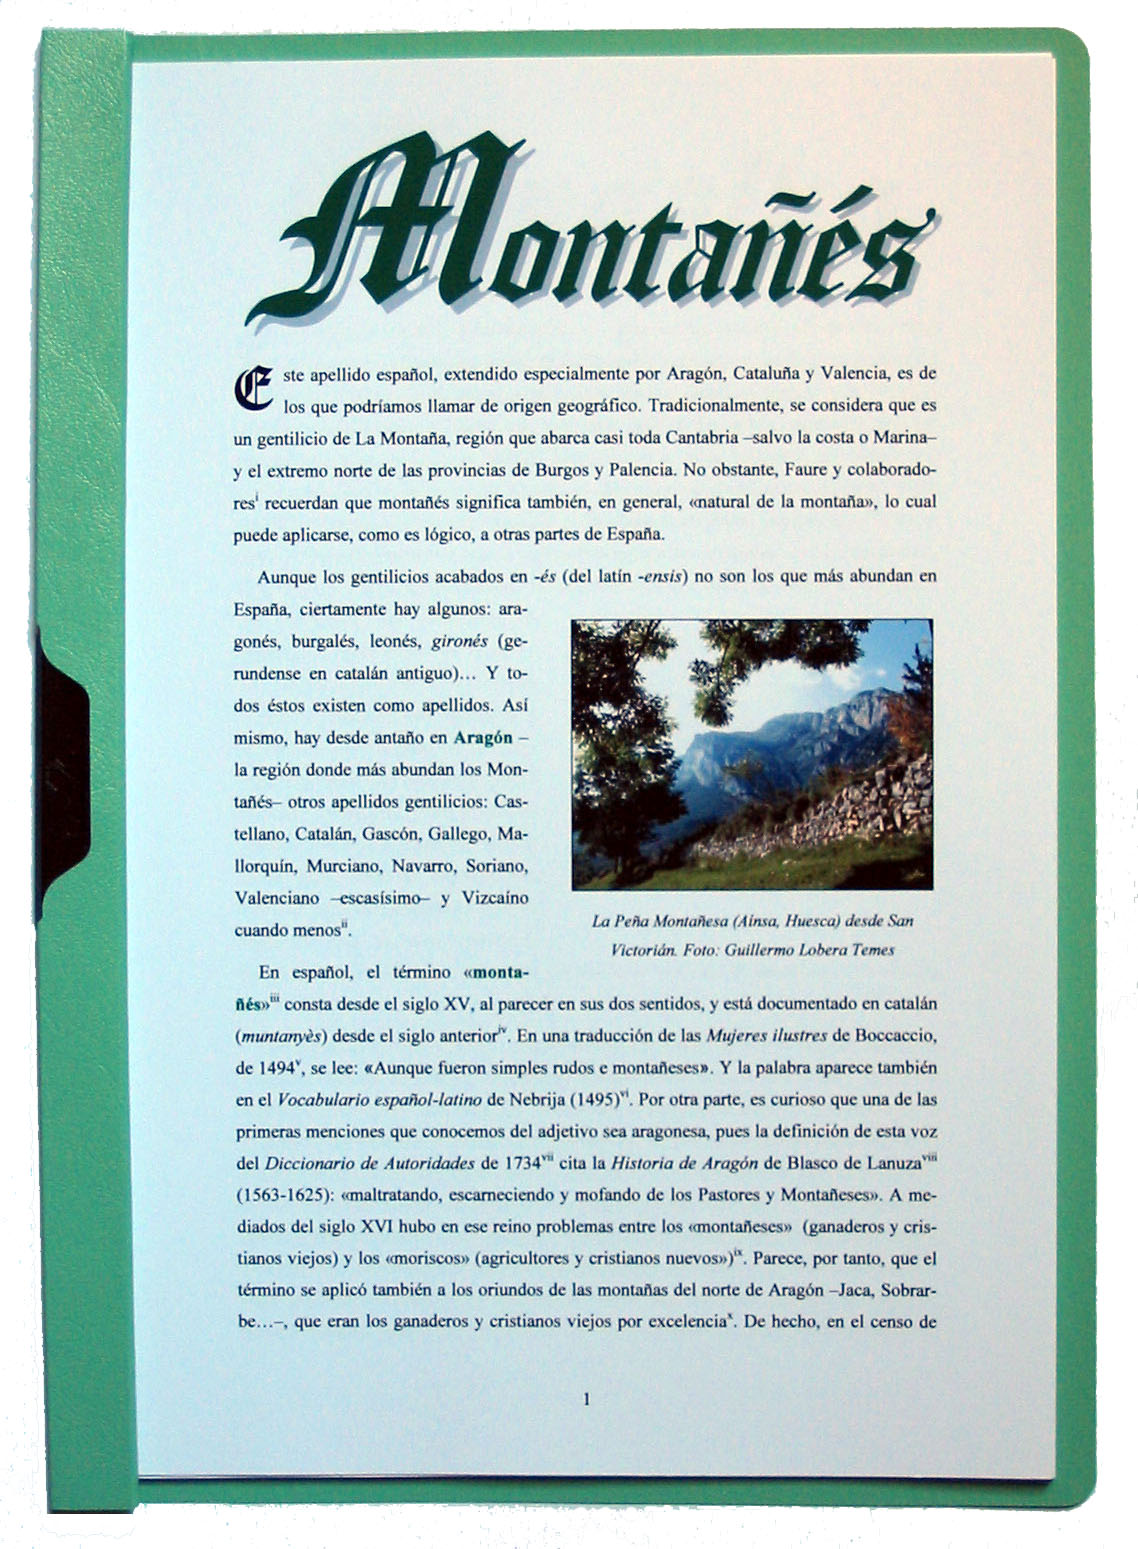 Fotografía de la portada del apellido Montañés. Pulsa encima para ampliar la imagen (334 kb).